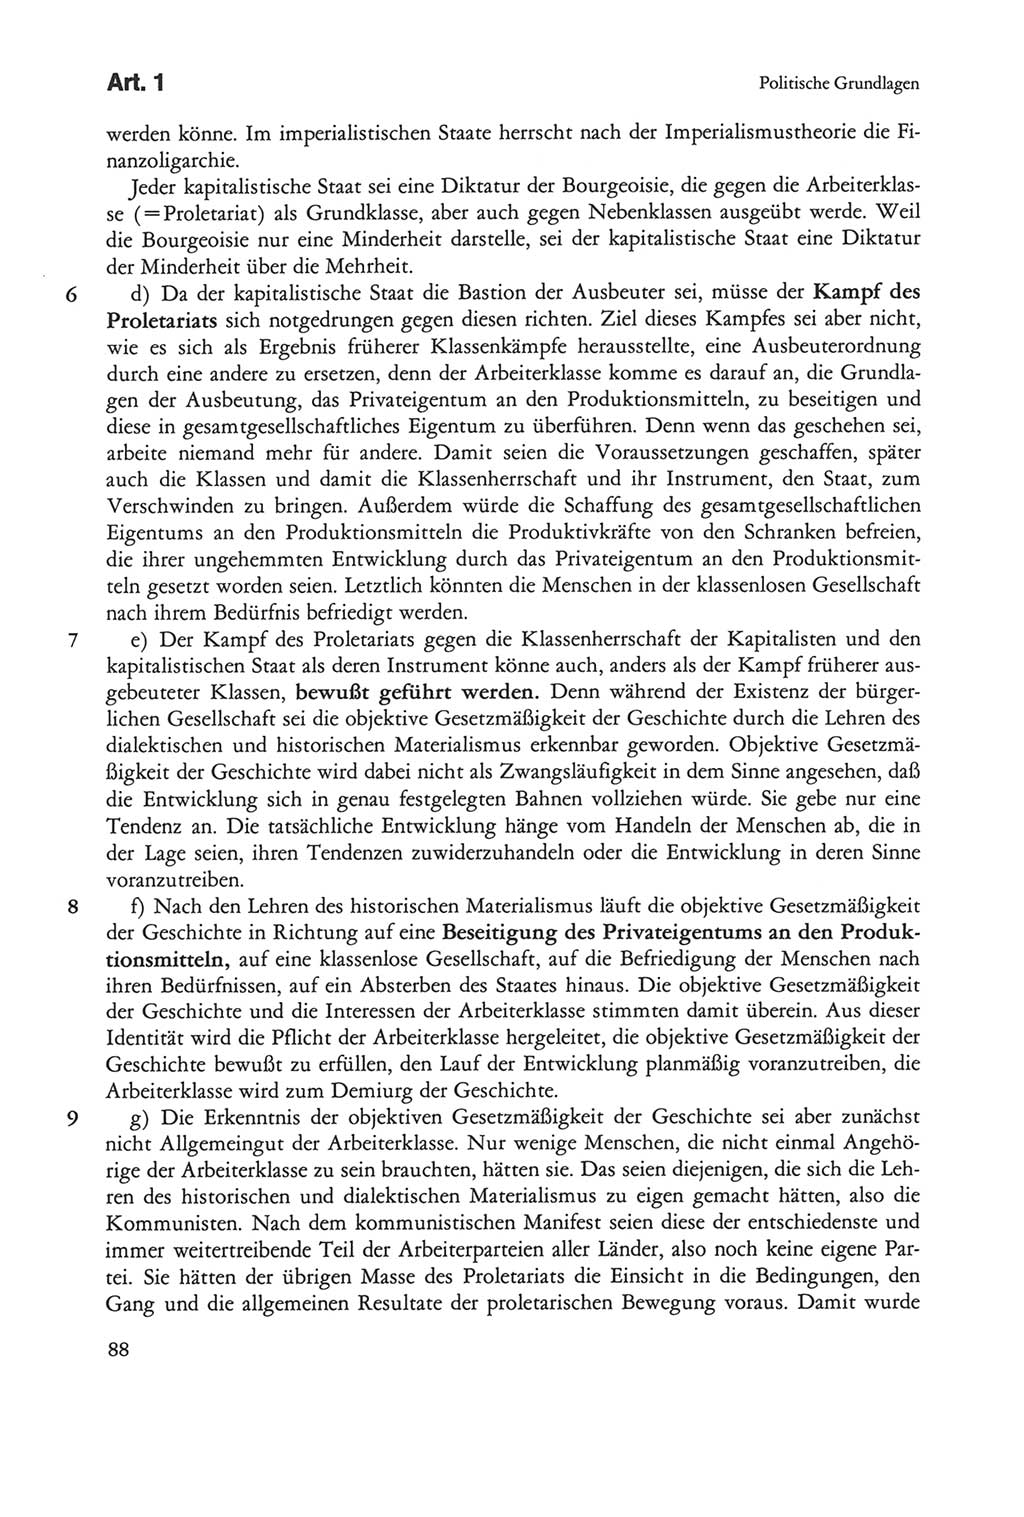 Die sozialistische Verfassung der Deutschen Demokratischen Republik (DDR), Kommentar 1982, Seite 88 (Soz. Verf. DDR Komm. 1982, S. 88)